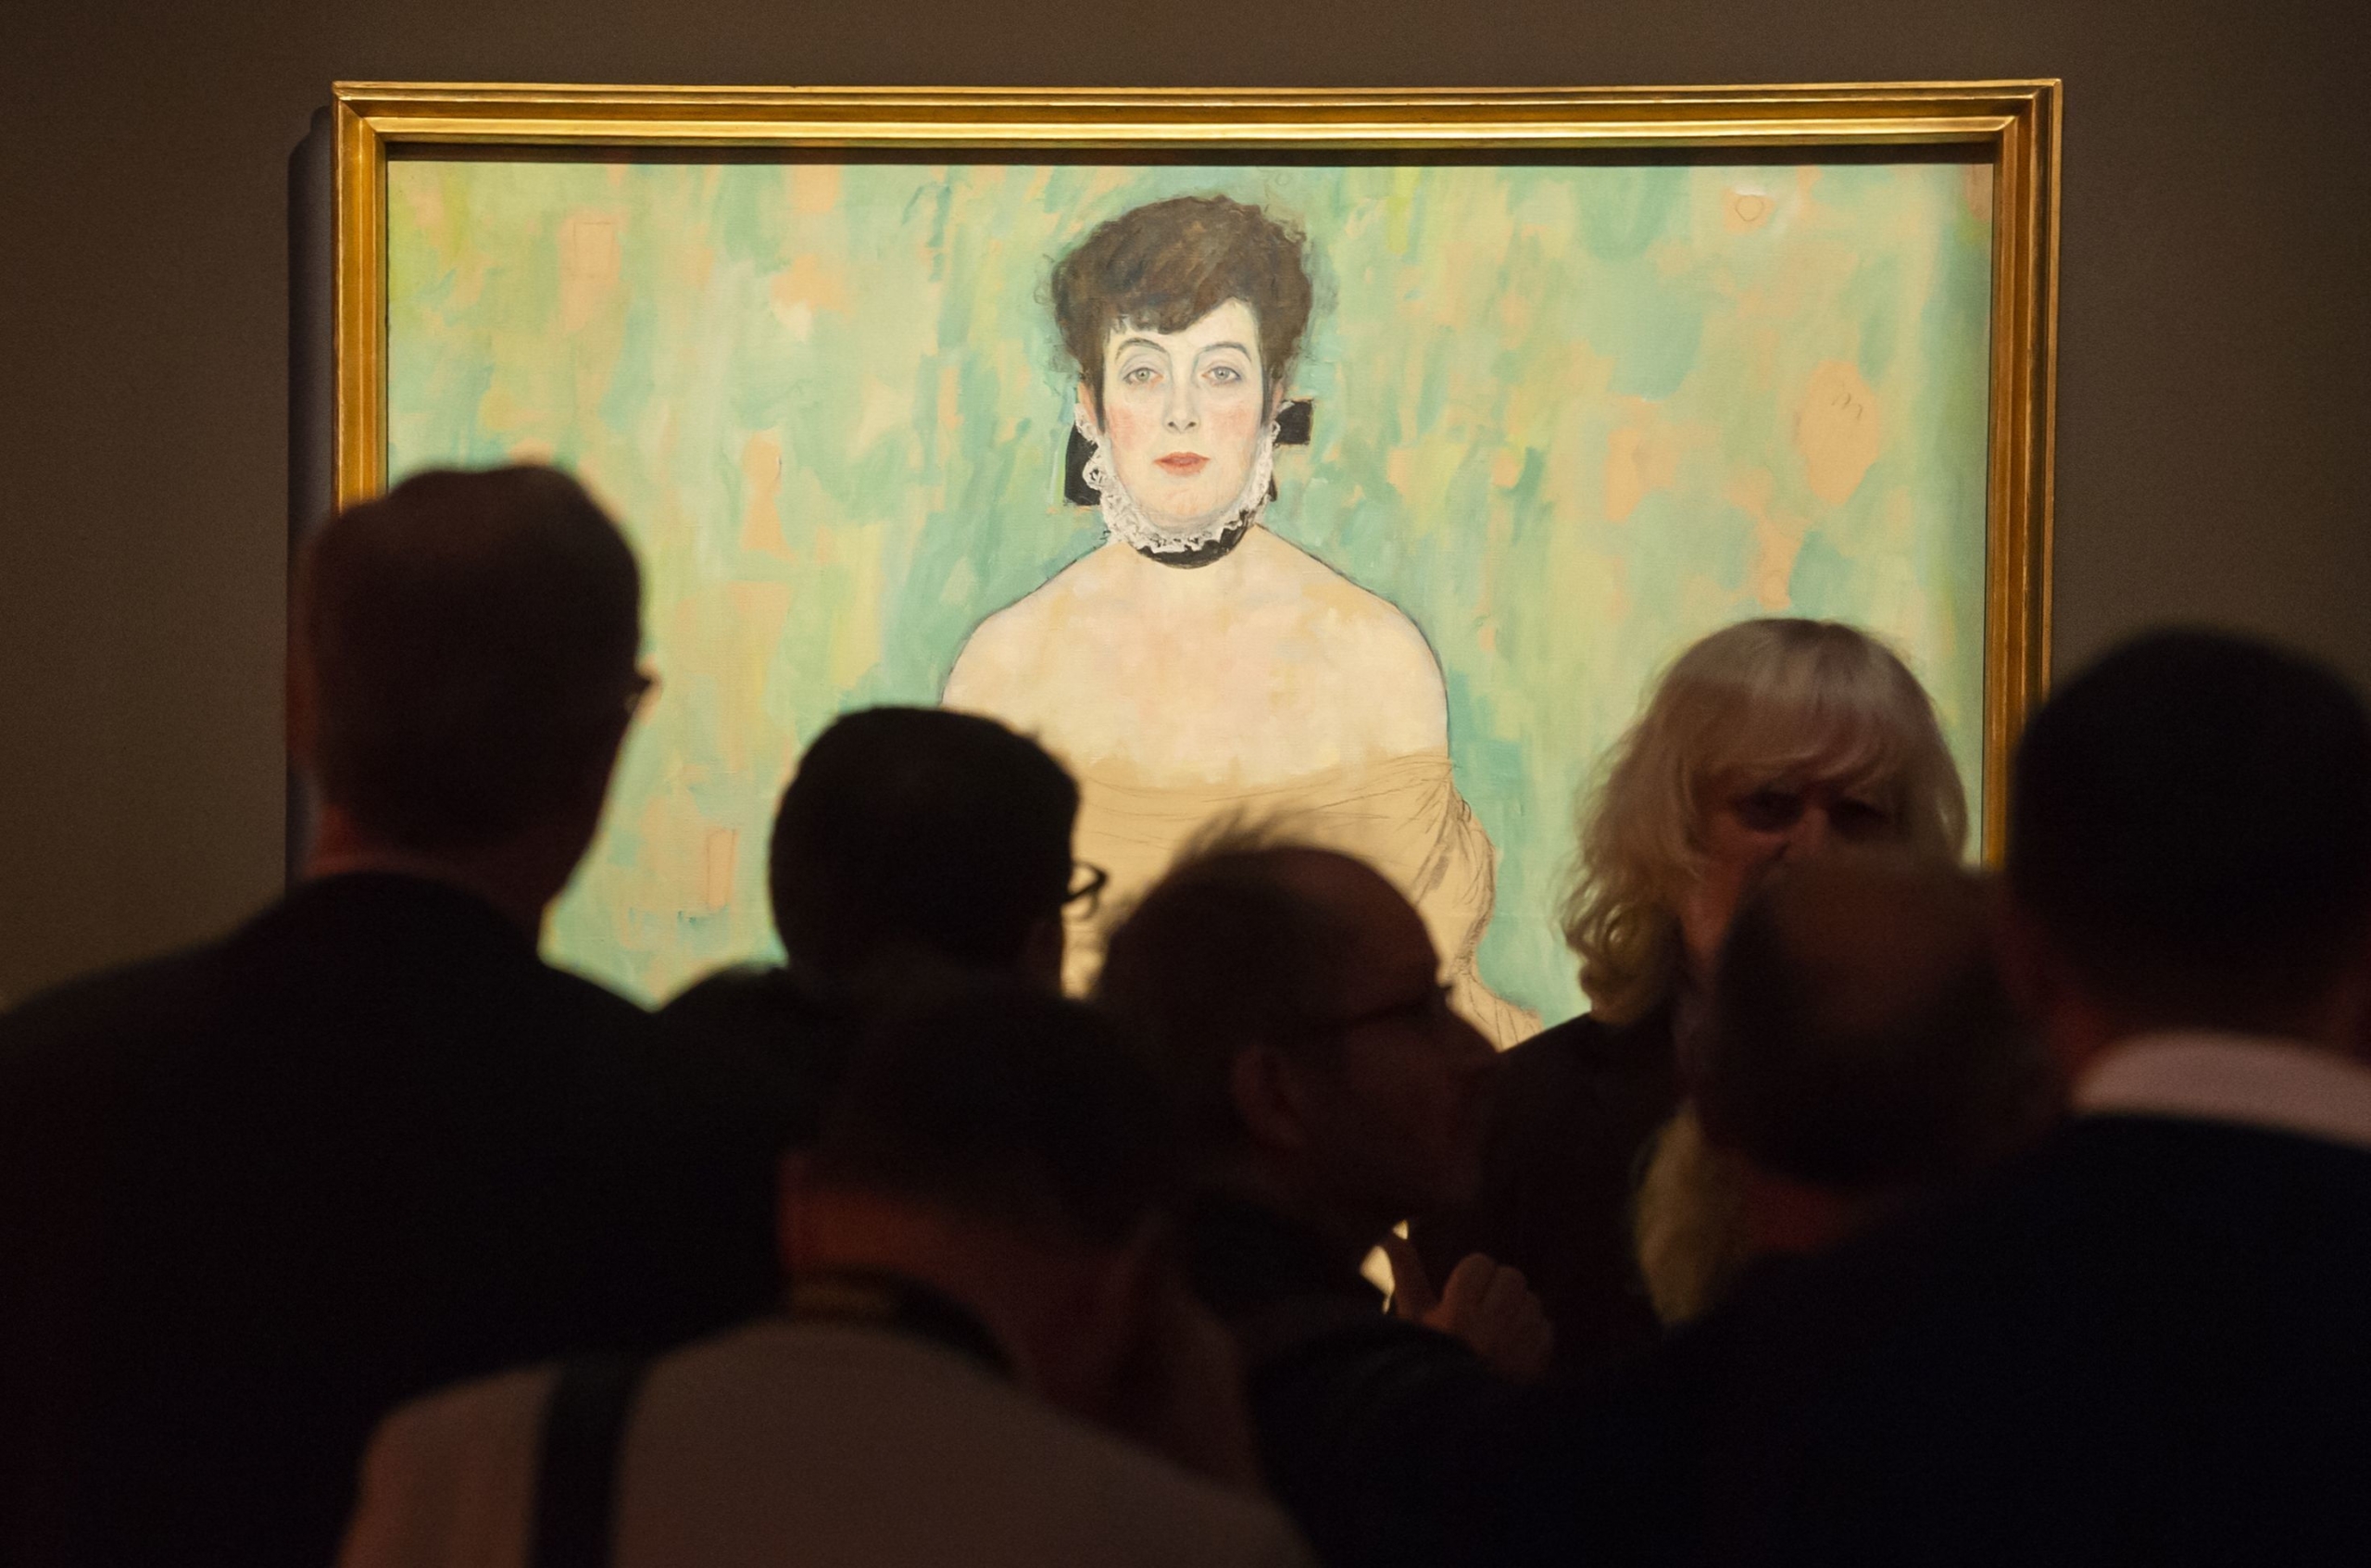 η κυρία με την εσάρπα - πίνακας του γκούσταβ κλιμτ βρέθηκε μετά από σχεδόν 100 χρόνια